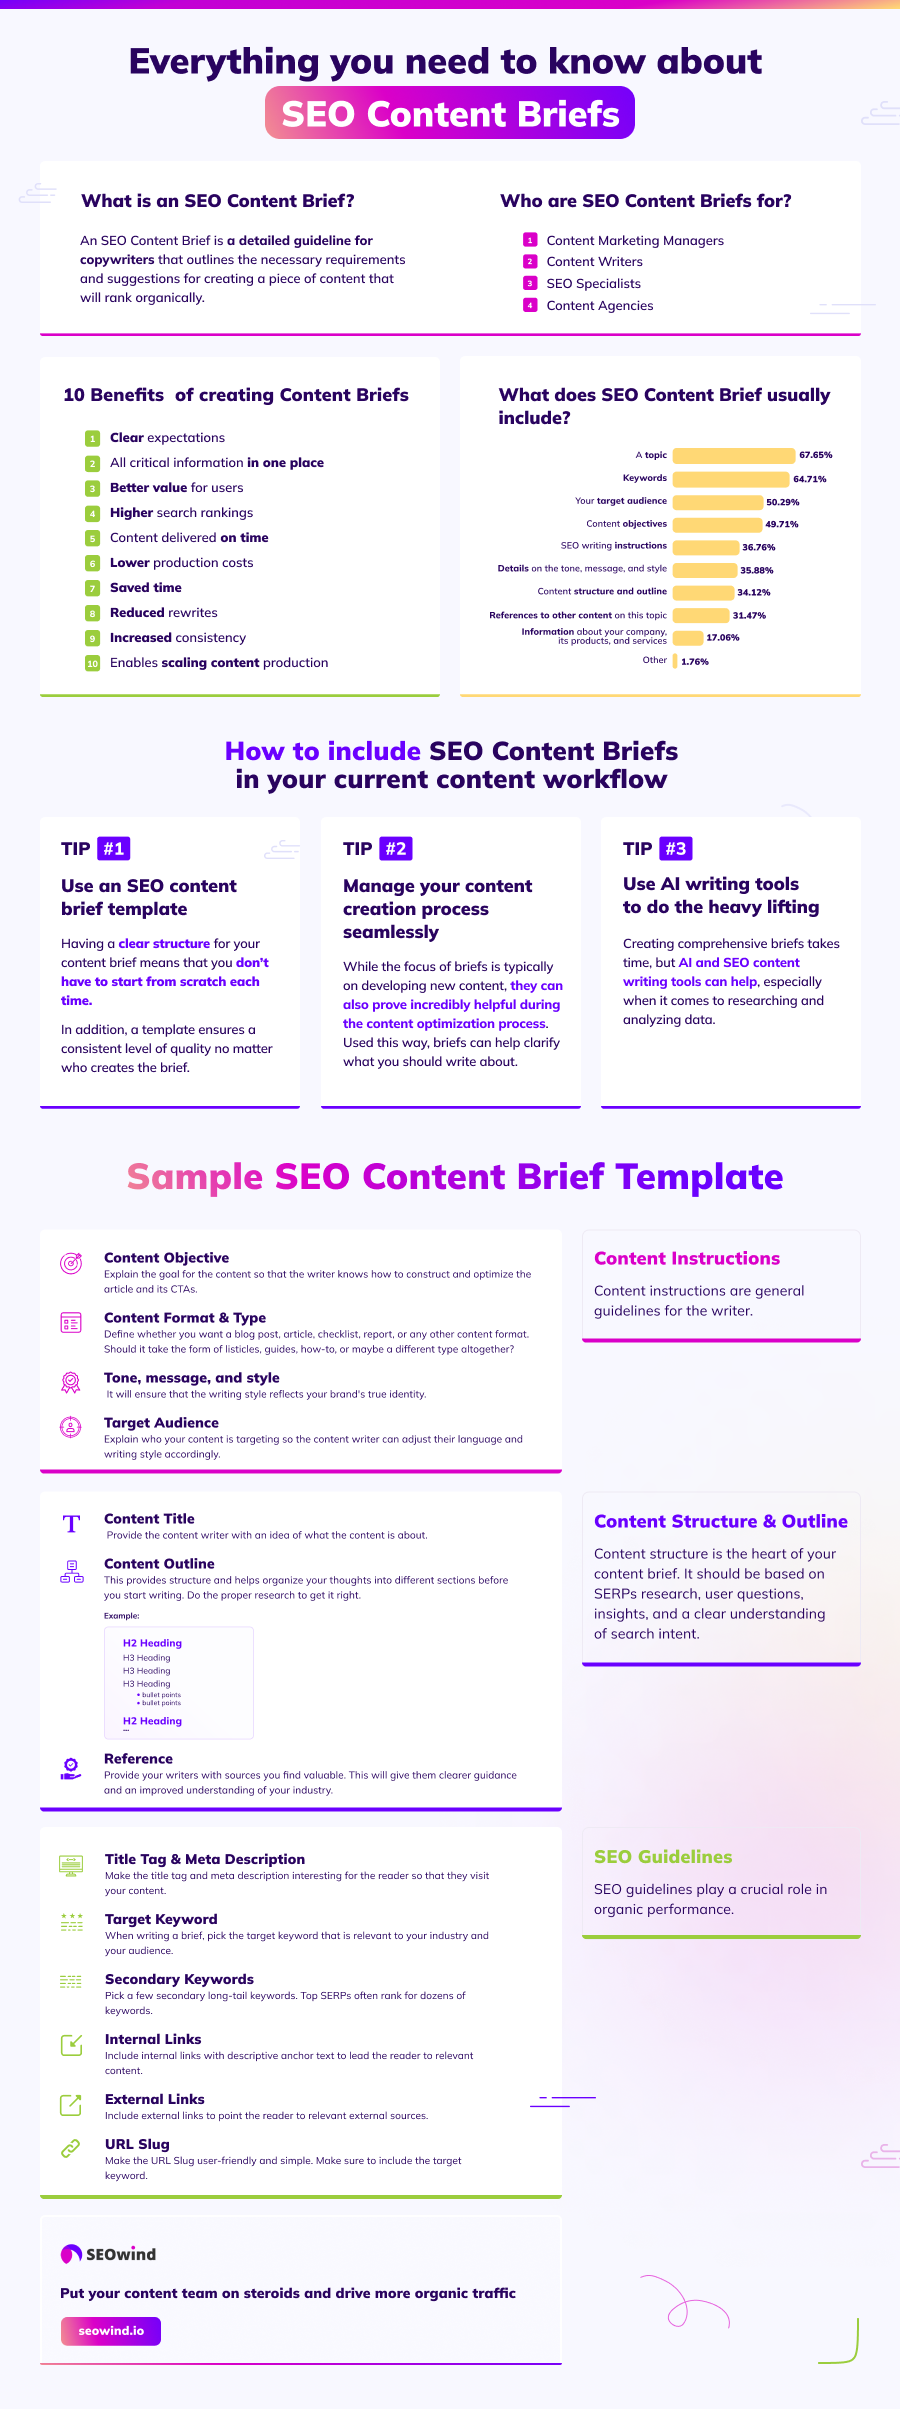 Alles wat u moet weten over SEO Content Briefs infographic